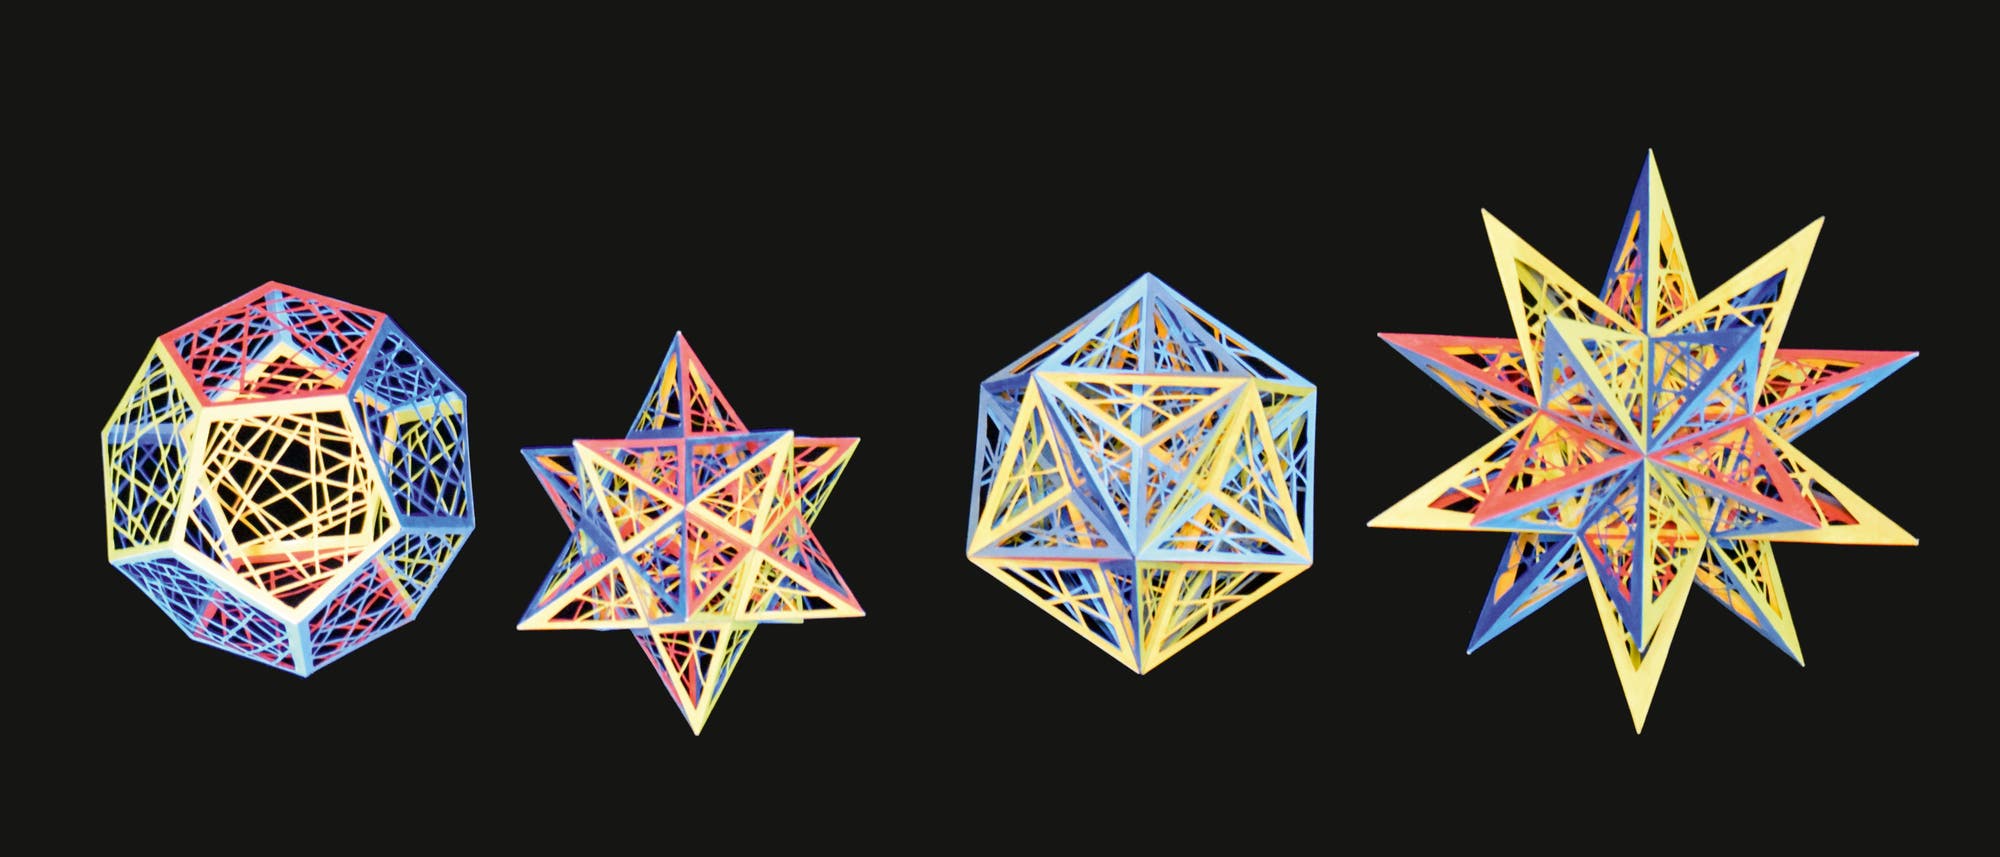 Erweitert man durch Verlängerung der Kanten die fünfeckigen Flächen des Dodekaeders (a) zu Fünfsternen (Pentagrammen), so entsteht das kleine Stern-dodekaeder (b). Das große Dodekaeder (c) ist wie das gewöhnliche Dodekaeder aus zwölf Fünfecken zusammengesetzt, die sich jedoch gegenseitig durchdringen. Das große Sterndodekaeder ("Ikosaederstern", d) besteht aus zwölf Pentagrammen, die sich jeweils zu dritt in einer Ecke treffen.